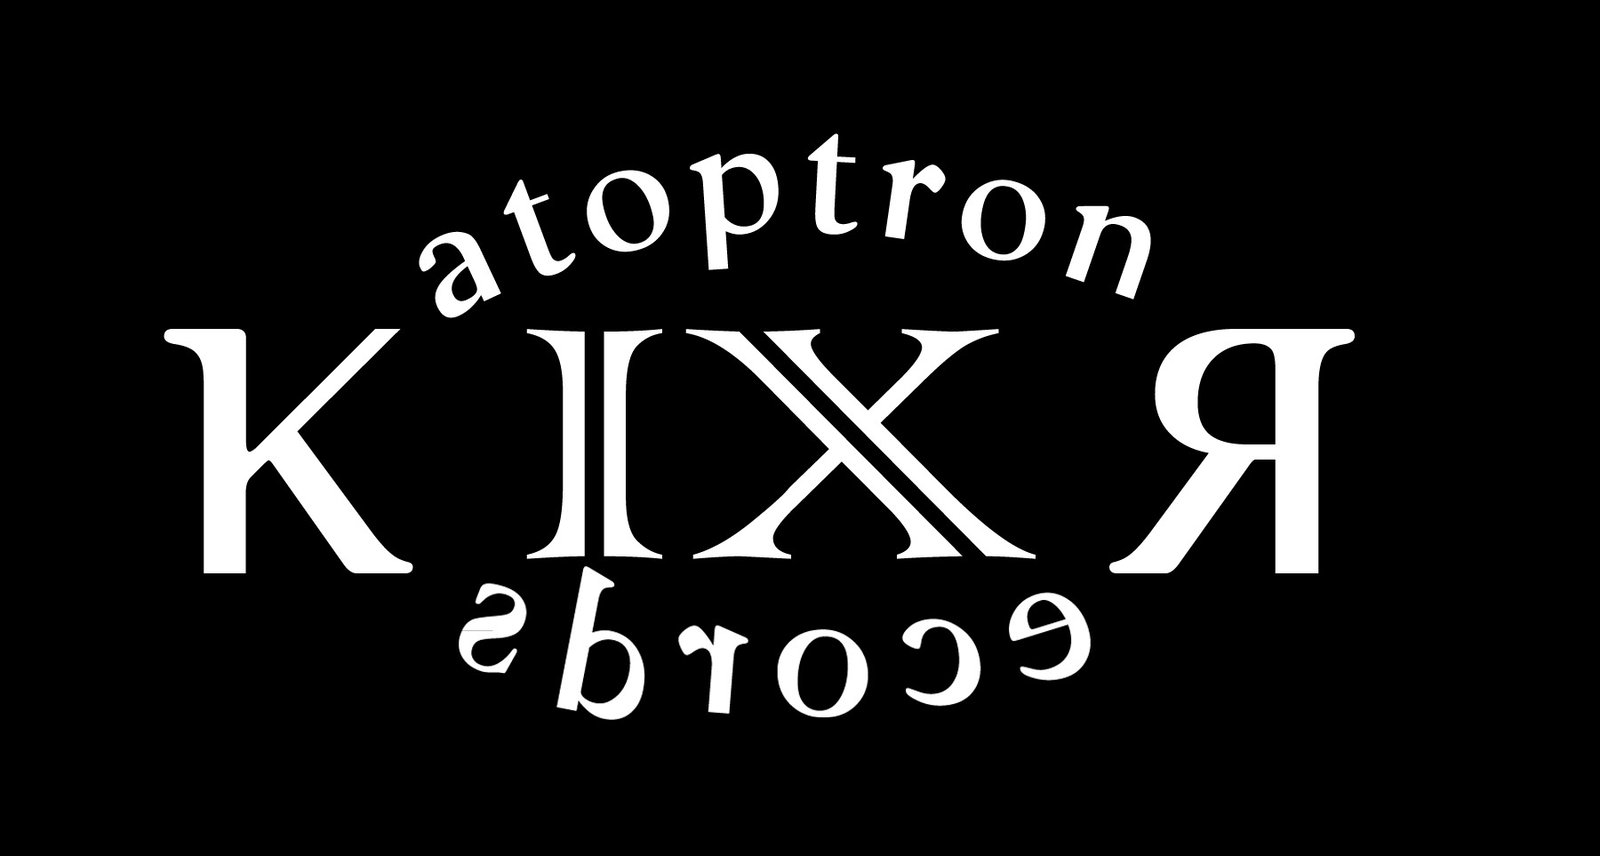 Katoptron IX